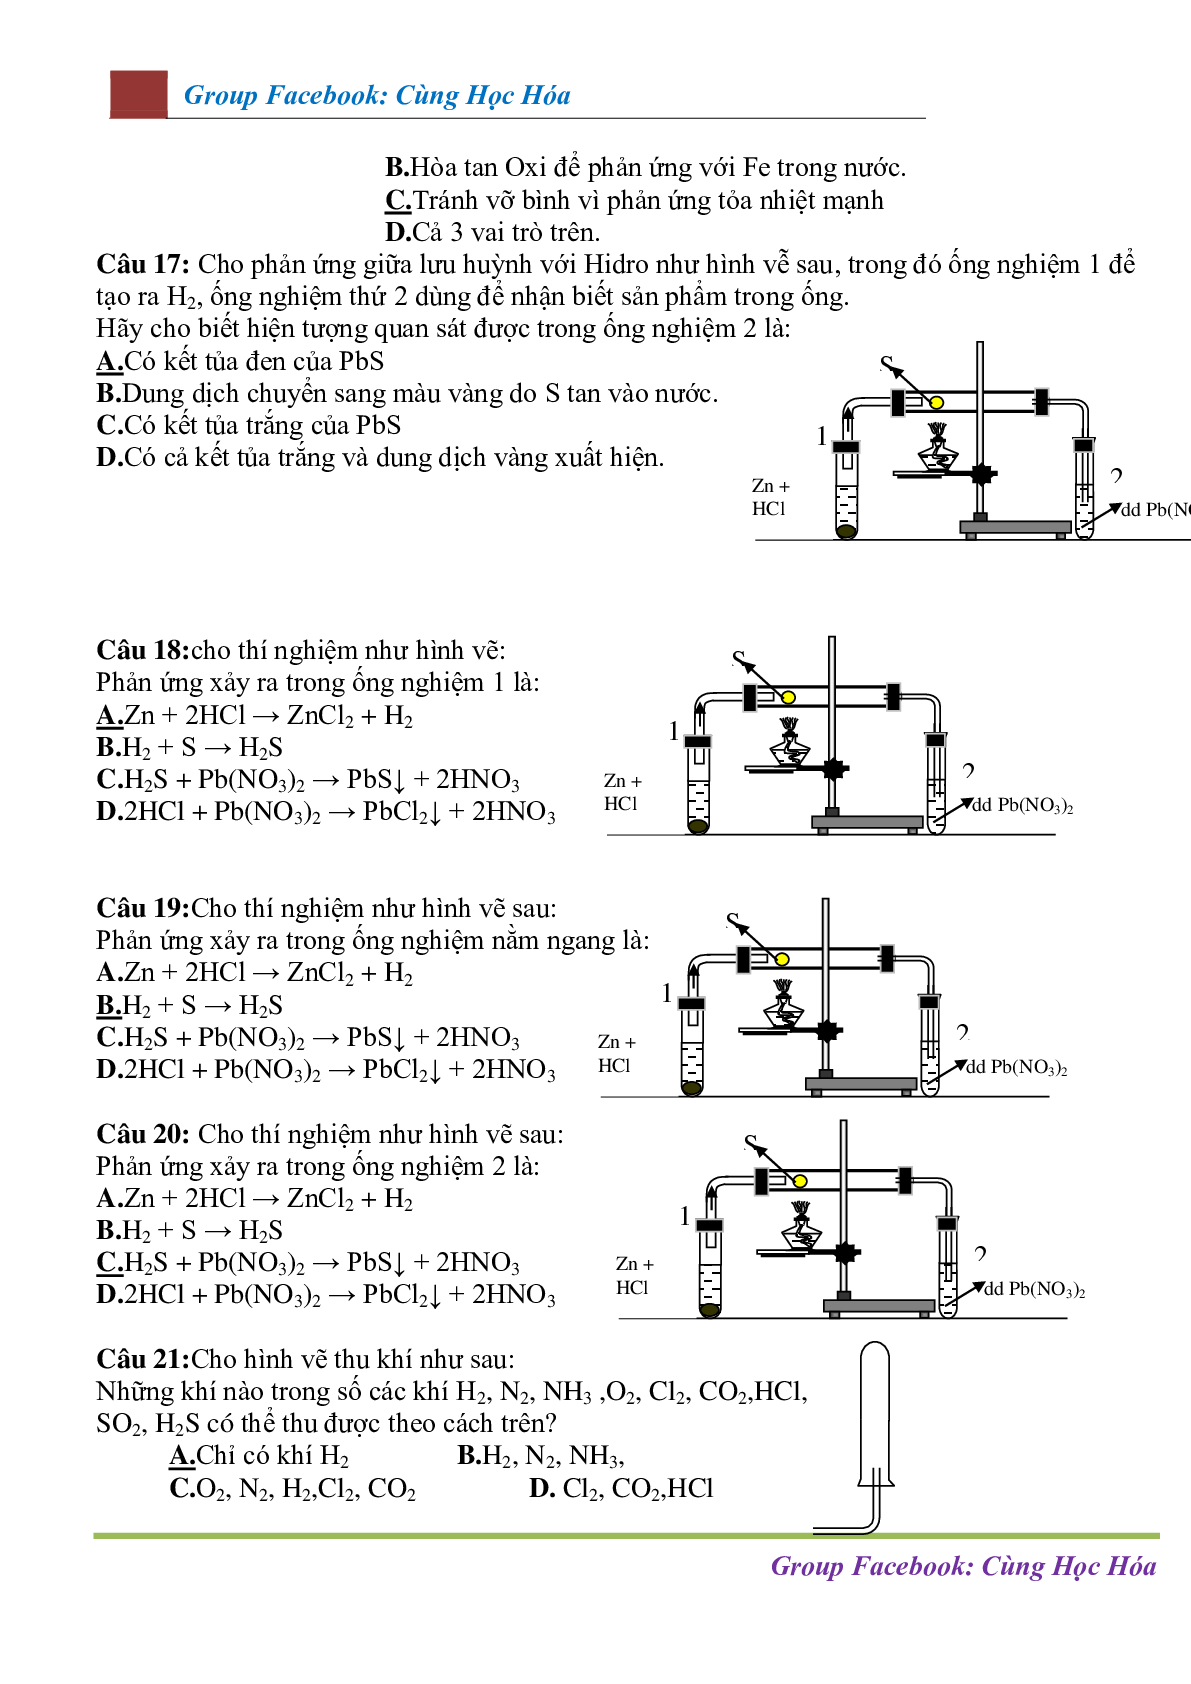 Chuyên đề Mô hình thí nghiệm - ứng dụng thực tế môn Hóa học ôn thi THPTQG (trang 6)